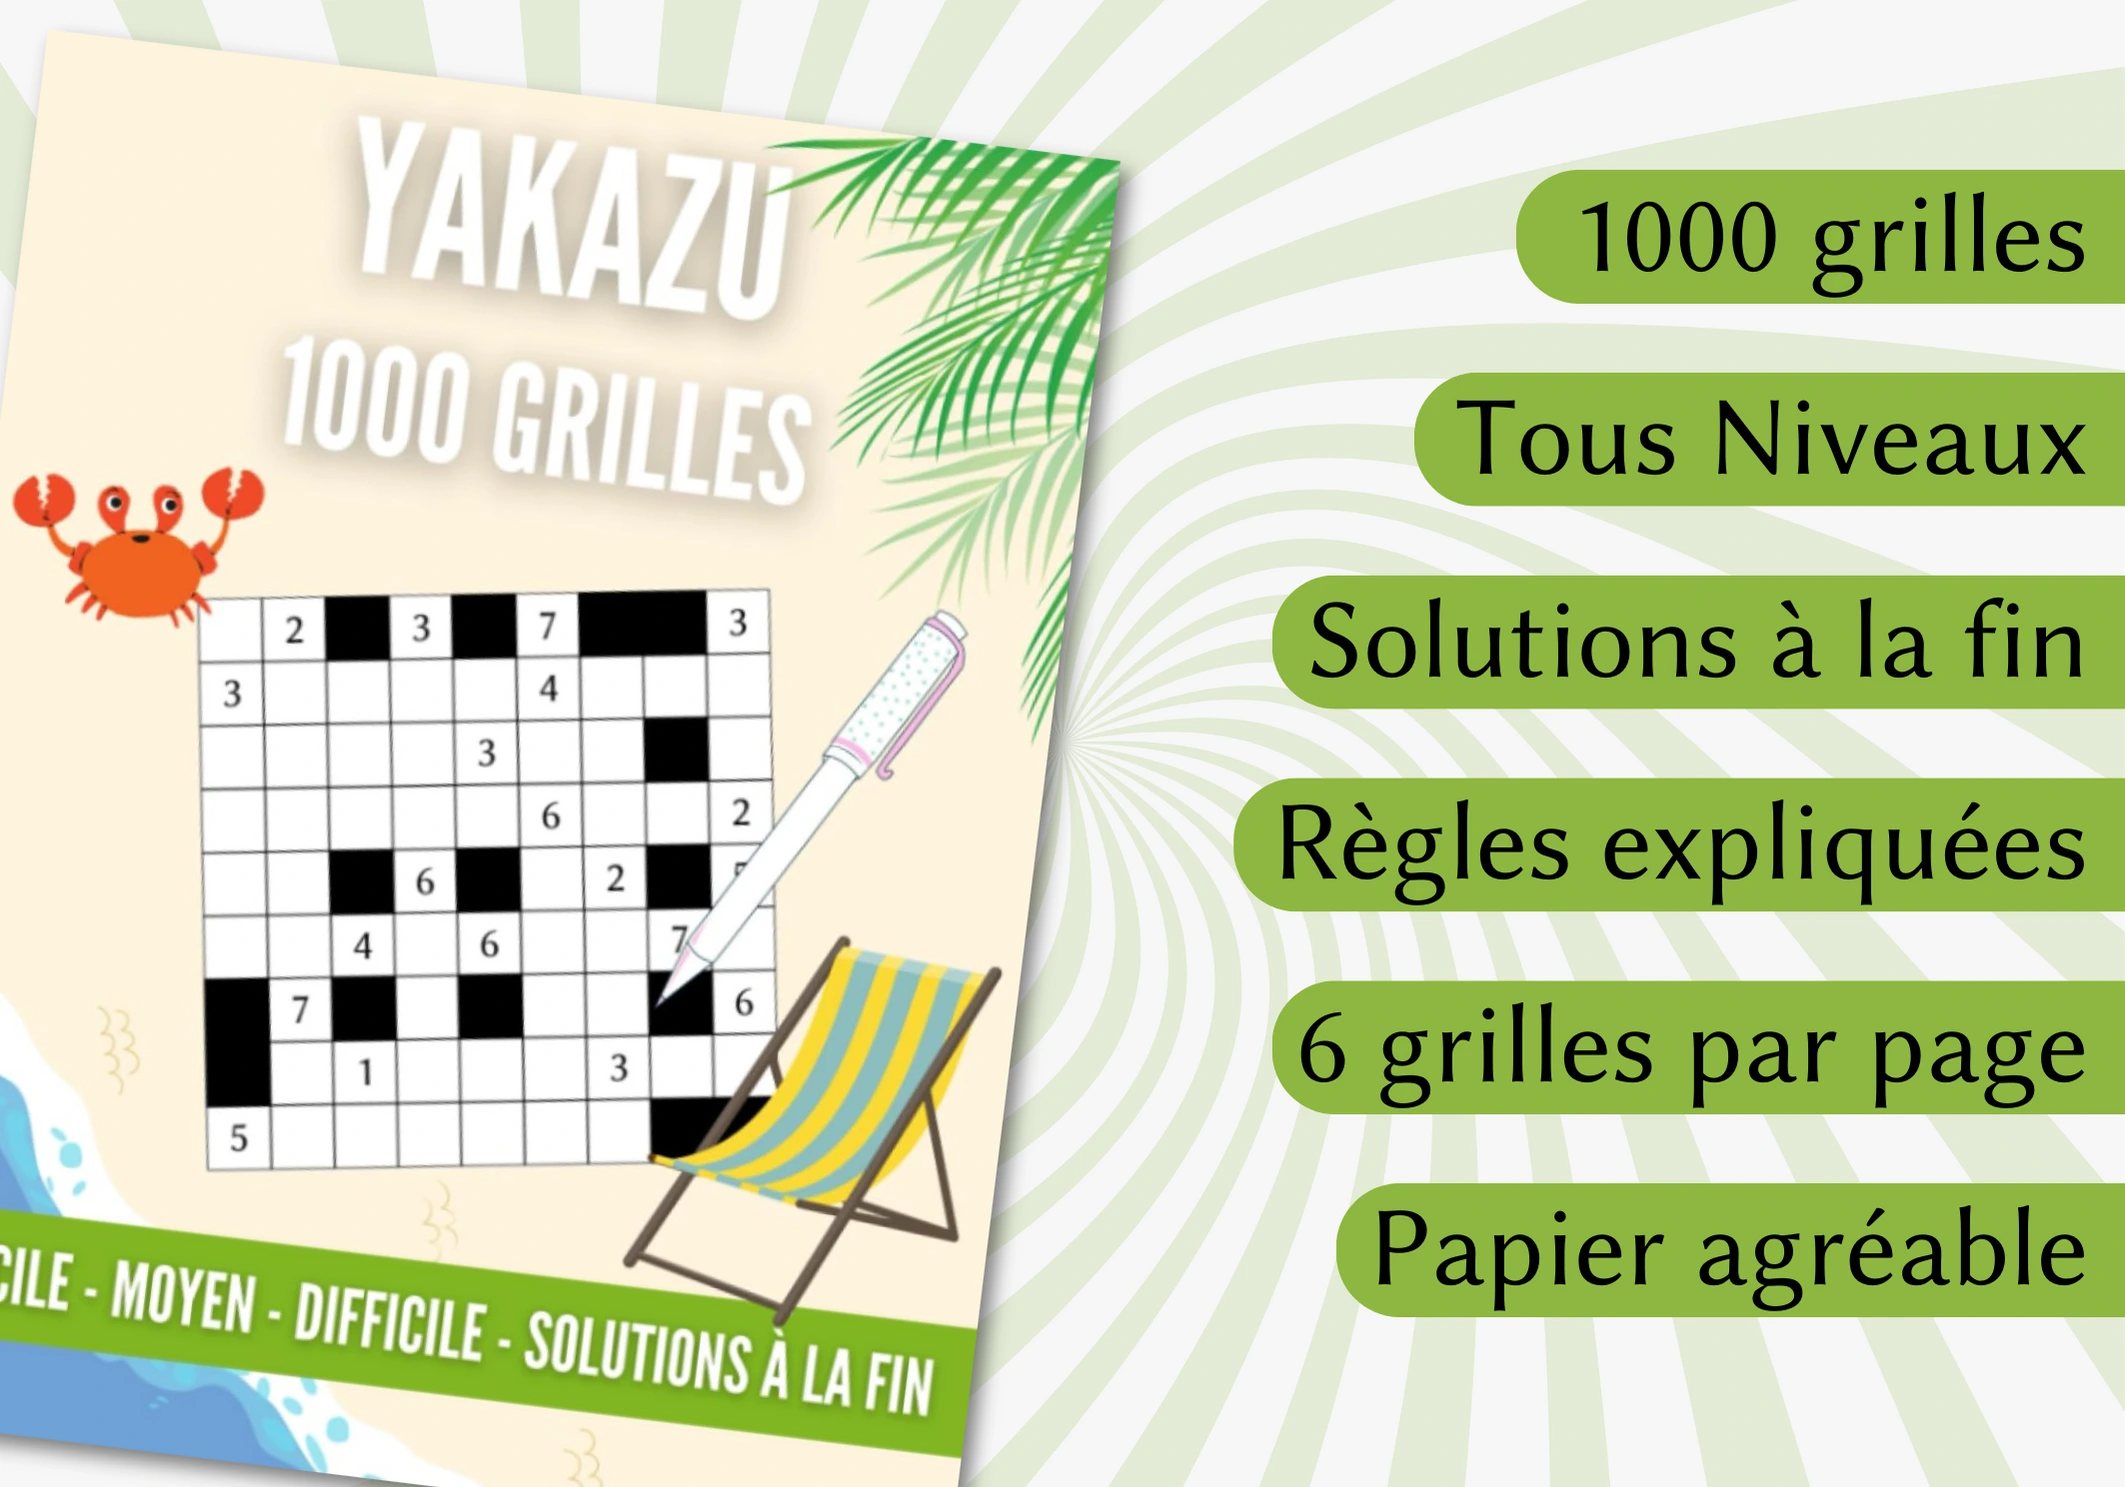 Livre 1000 grilles de Yakazu tous niveaux, tome 2